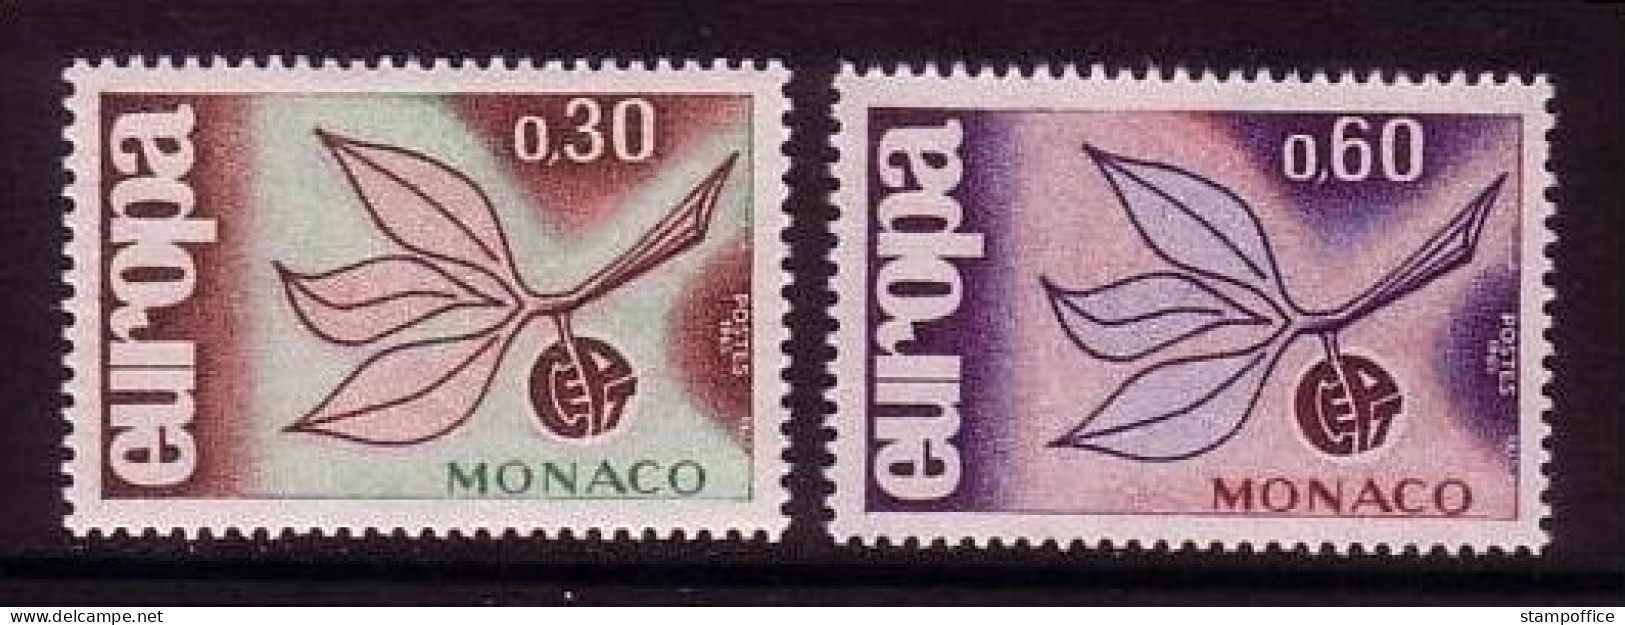 MONACO MI-NR. 810-811 POSTFRISCH(MINT) EUROPA 1965 ZWEIG - 1965